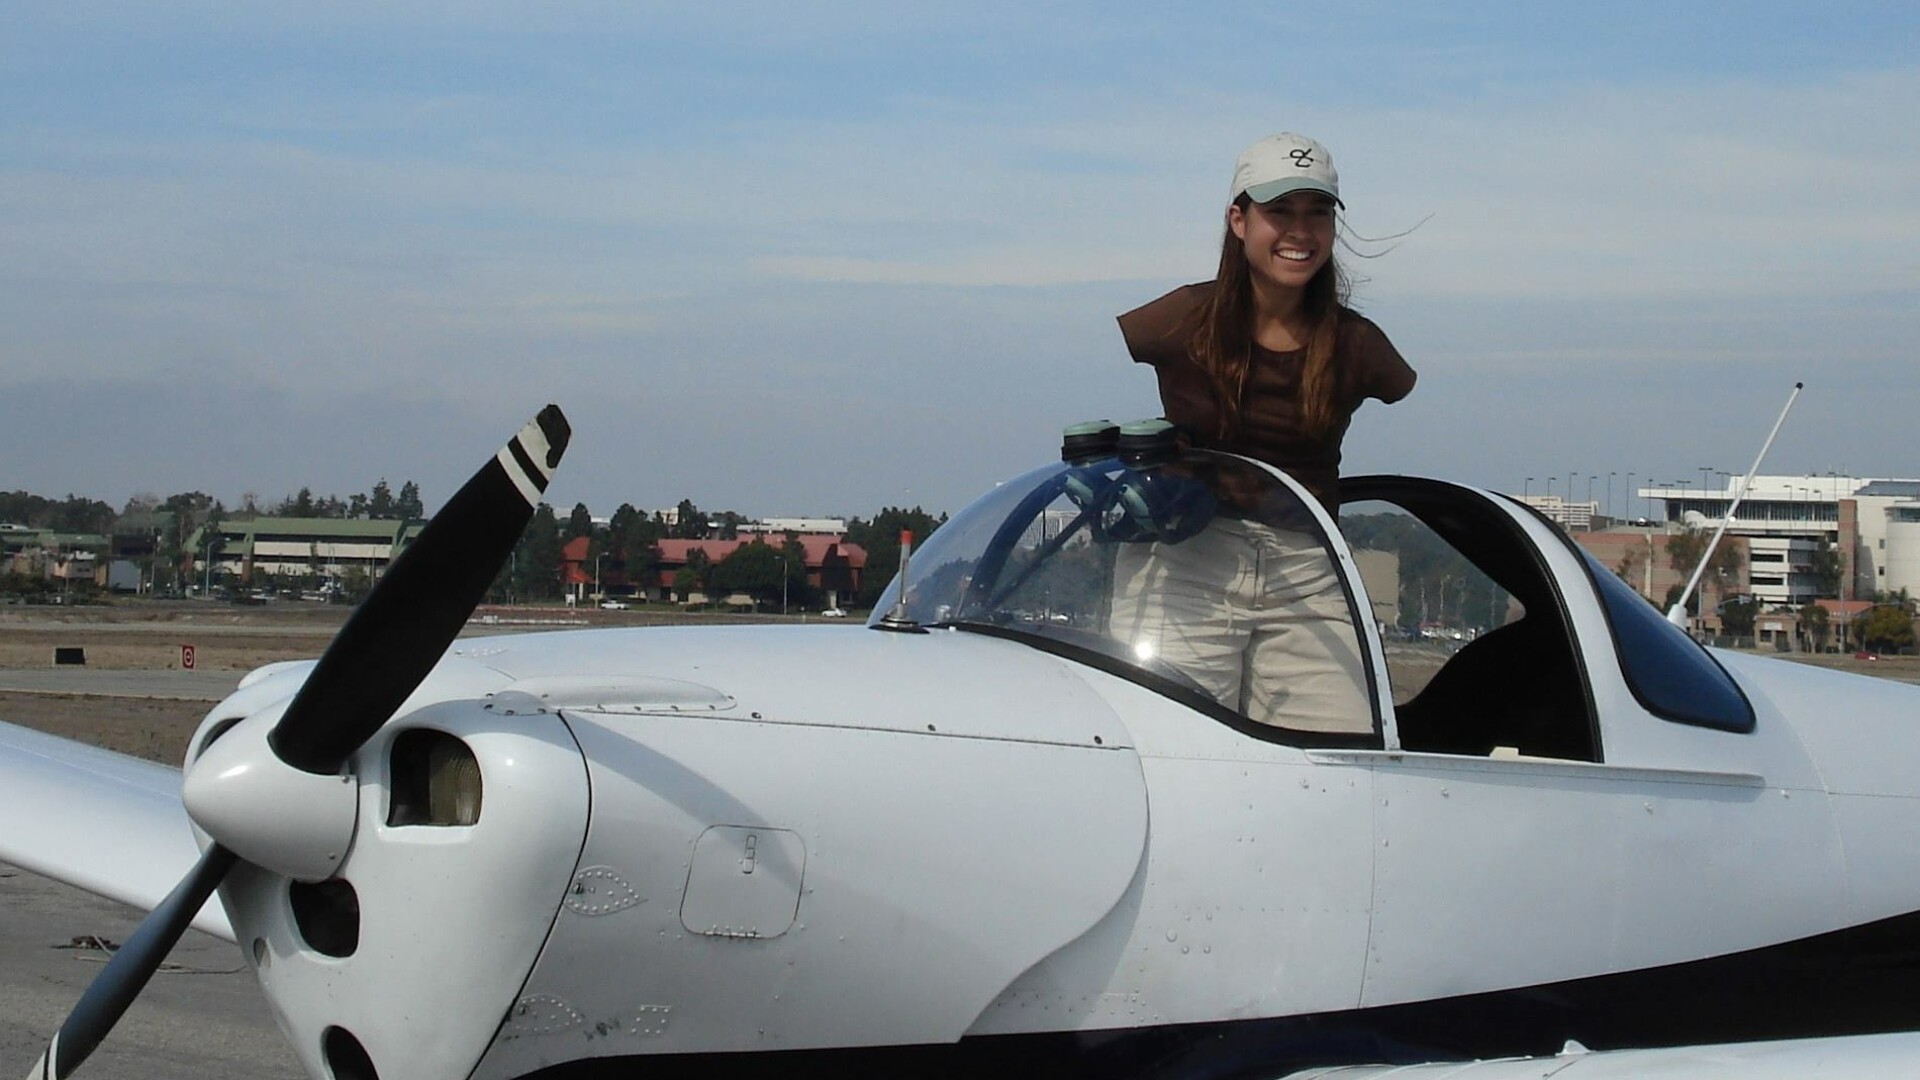 Povestea unei femei care a devenit pilot, deși s-a născut fără mâini - 6